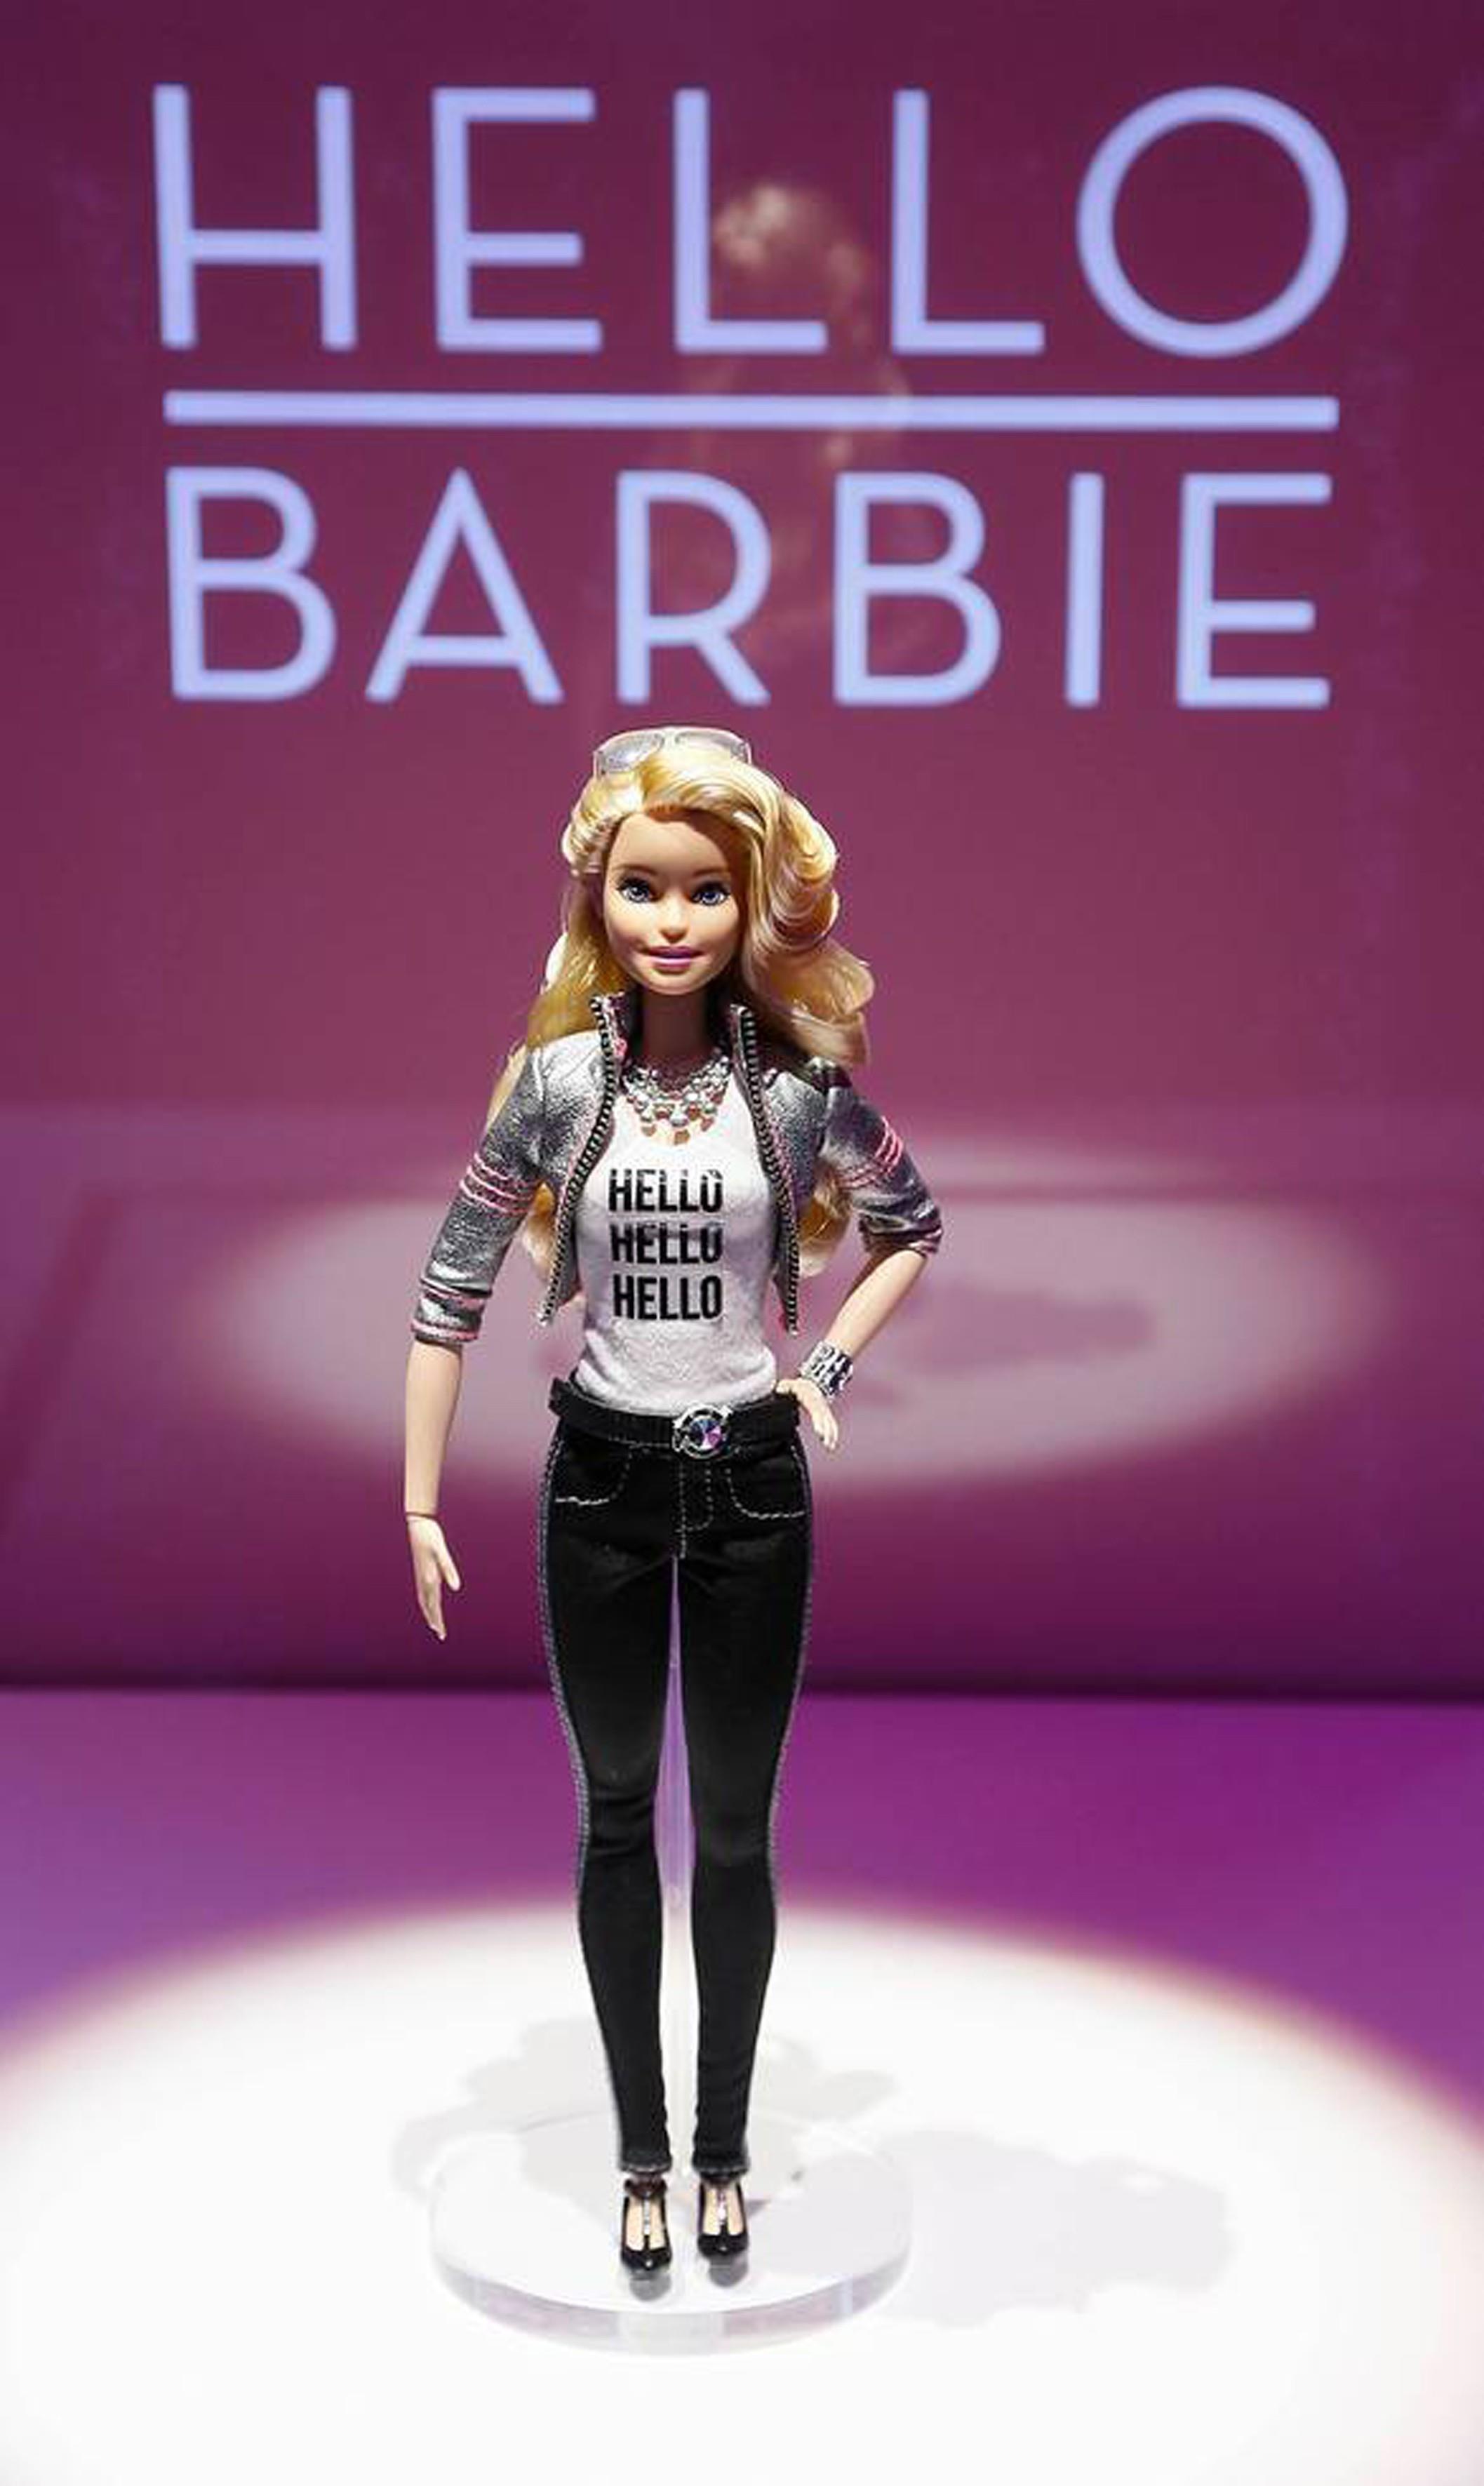 Barbie słyszy wszystko | Newsweek